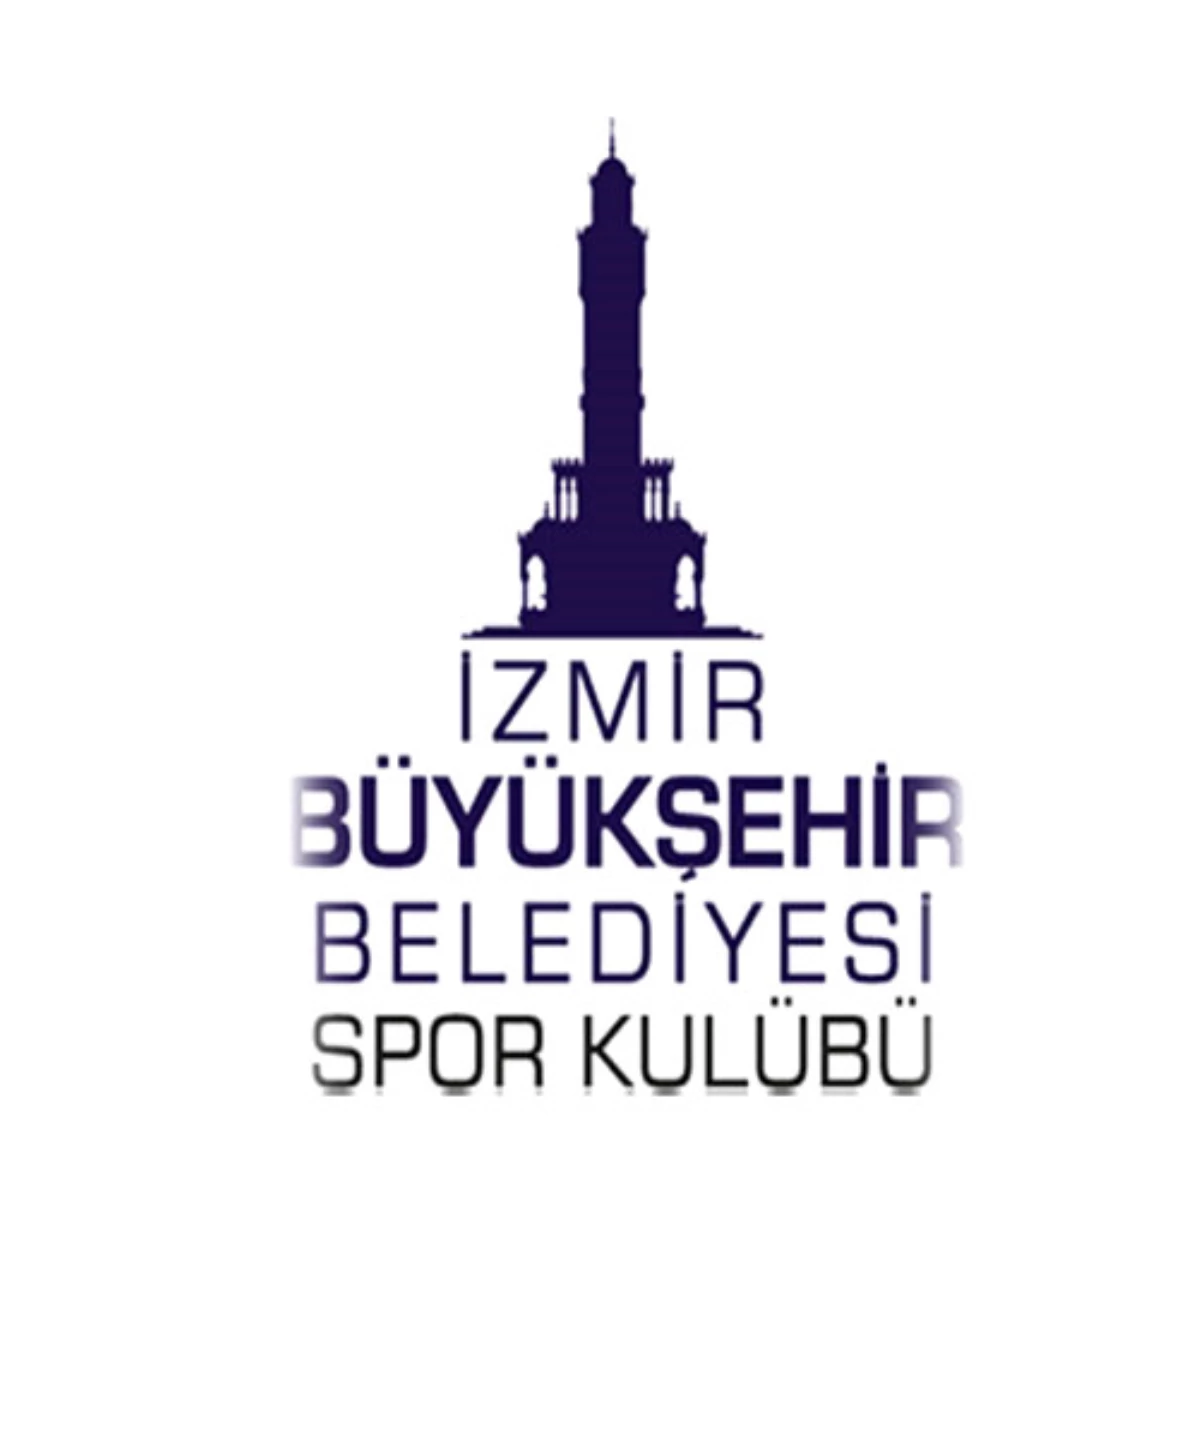 İzmir Bb Ulaşım Entegrasyon Merkezi ve Yakın Çevresinin Düzenlenmesi Mimari Proje Sergisi